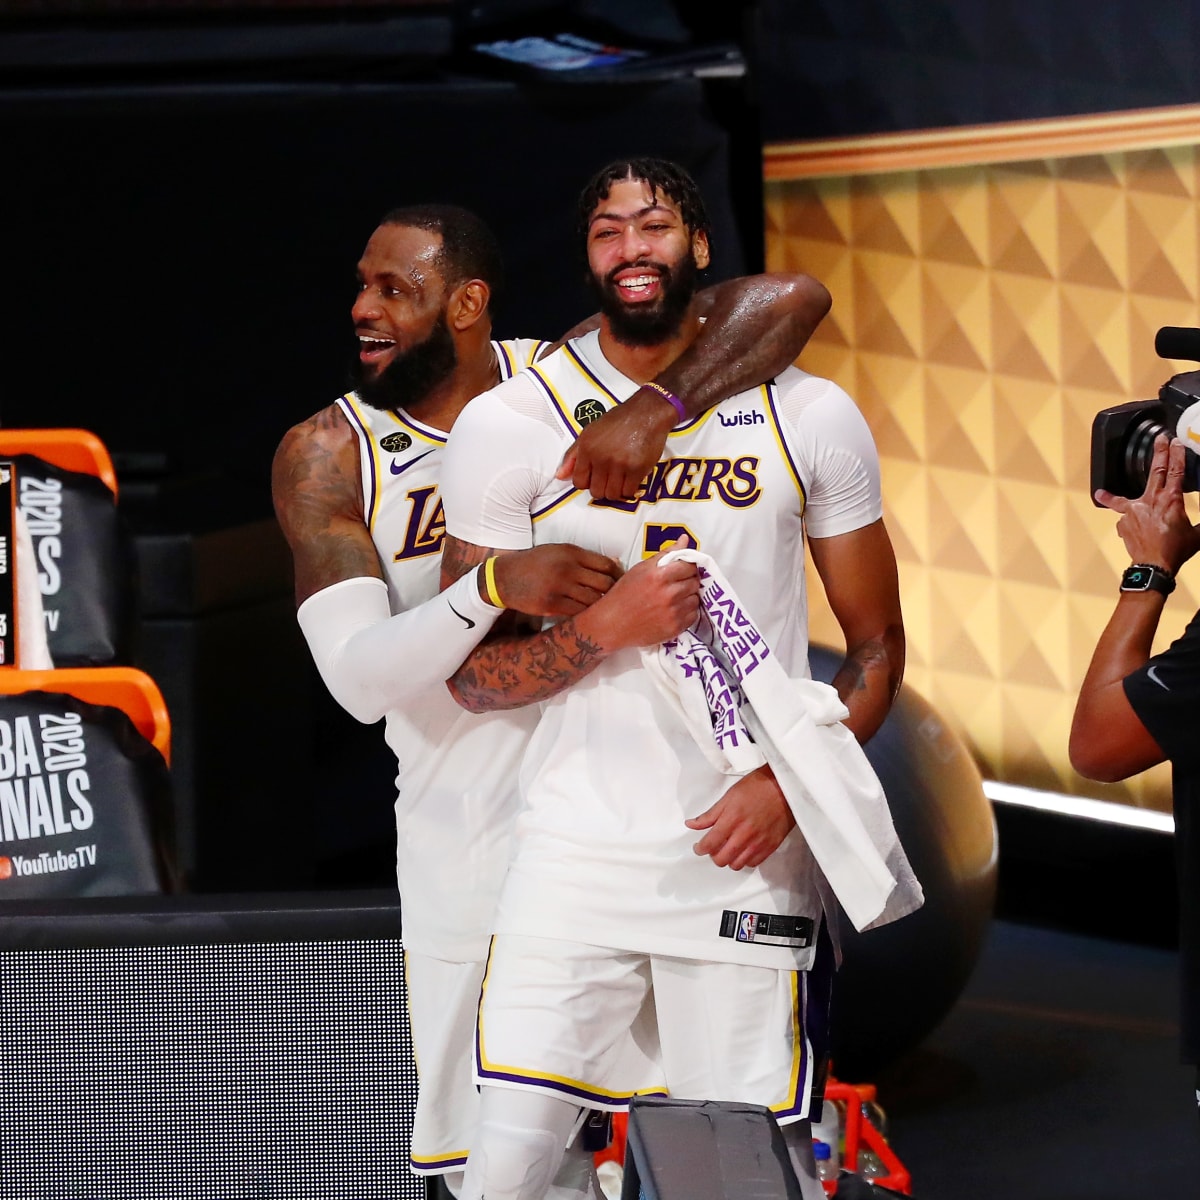 LeBron James: Lakers coach Luke Walton reveals Kobe Bryant